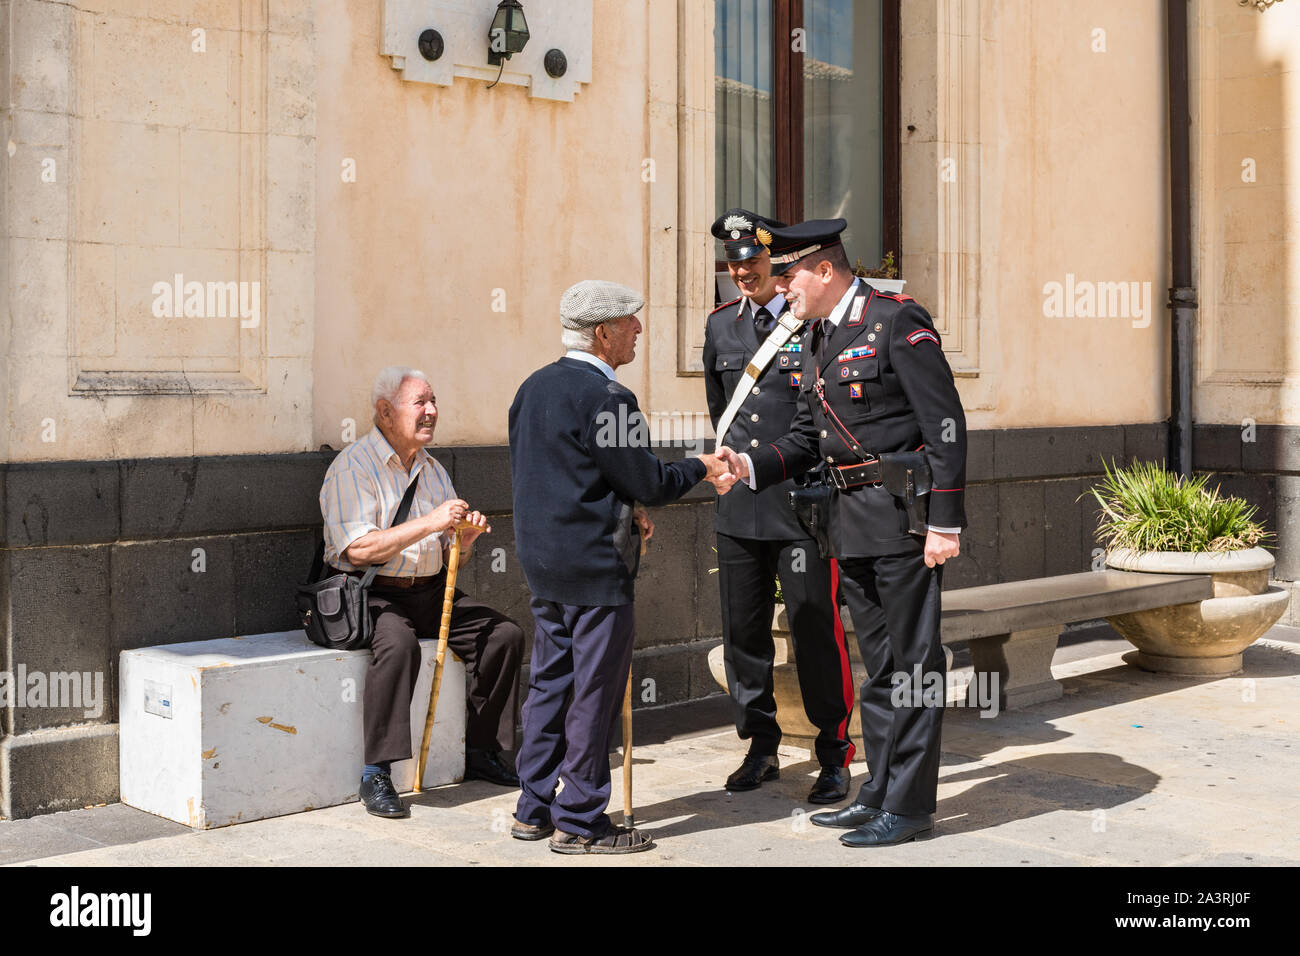 Siracusa Sicilia/ Italia - ottobre 04 2019: Carabinieri discutere con due persone anziane nella piazza del paese Foto Stock